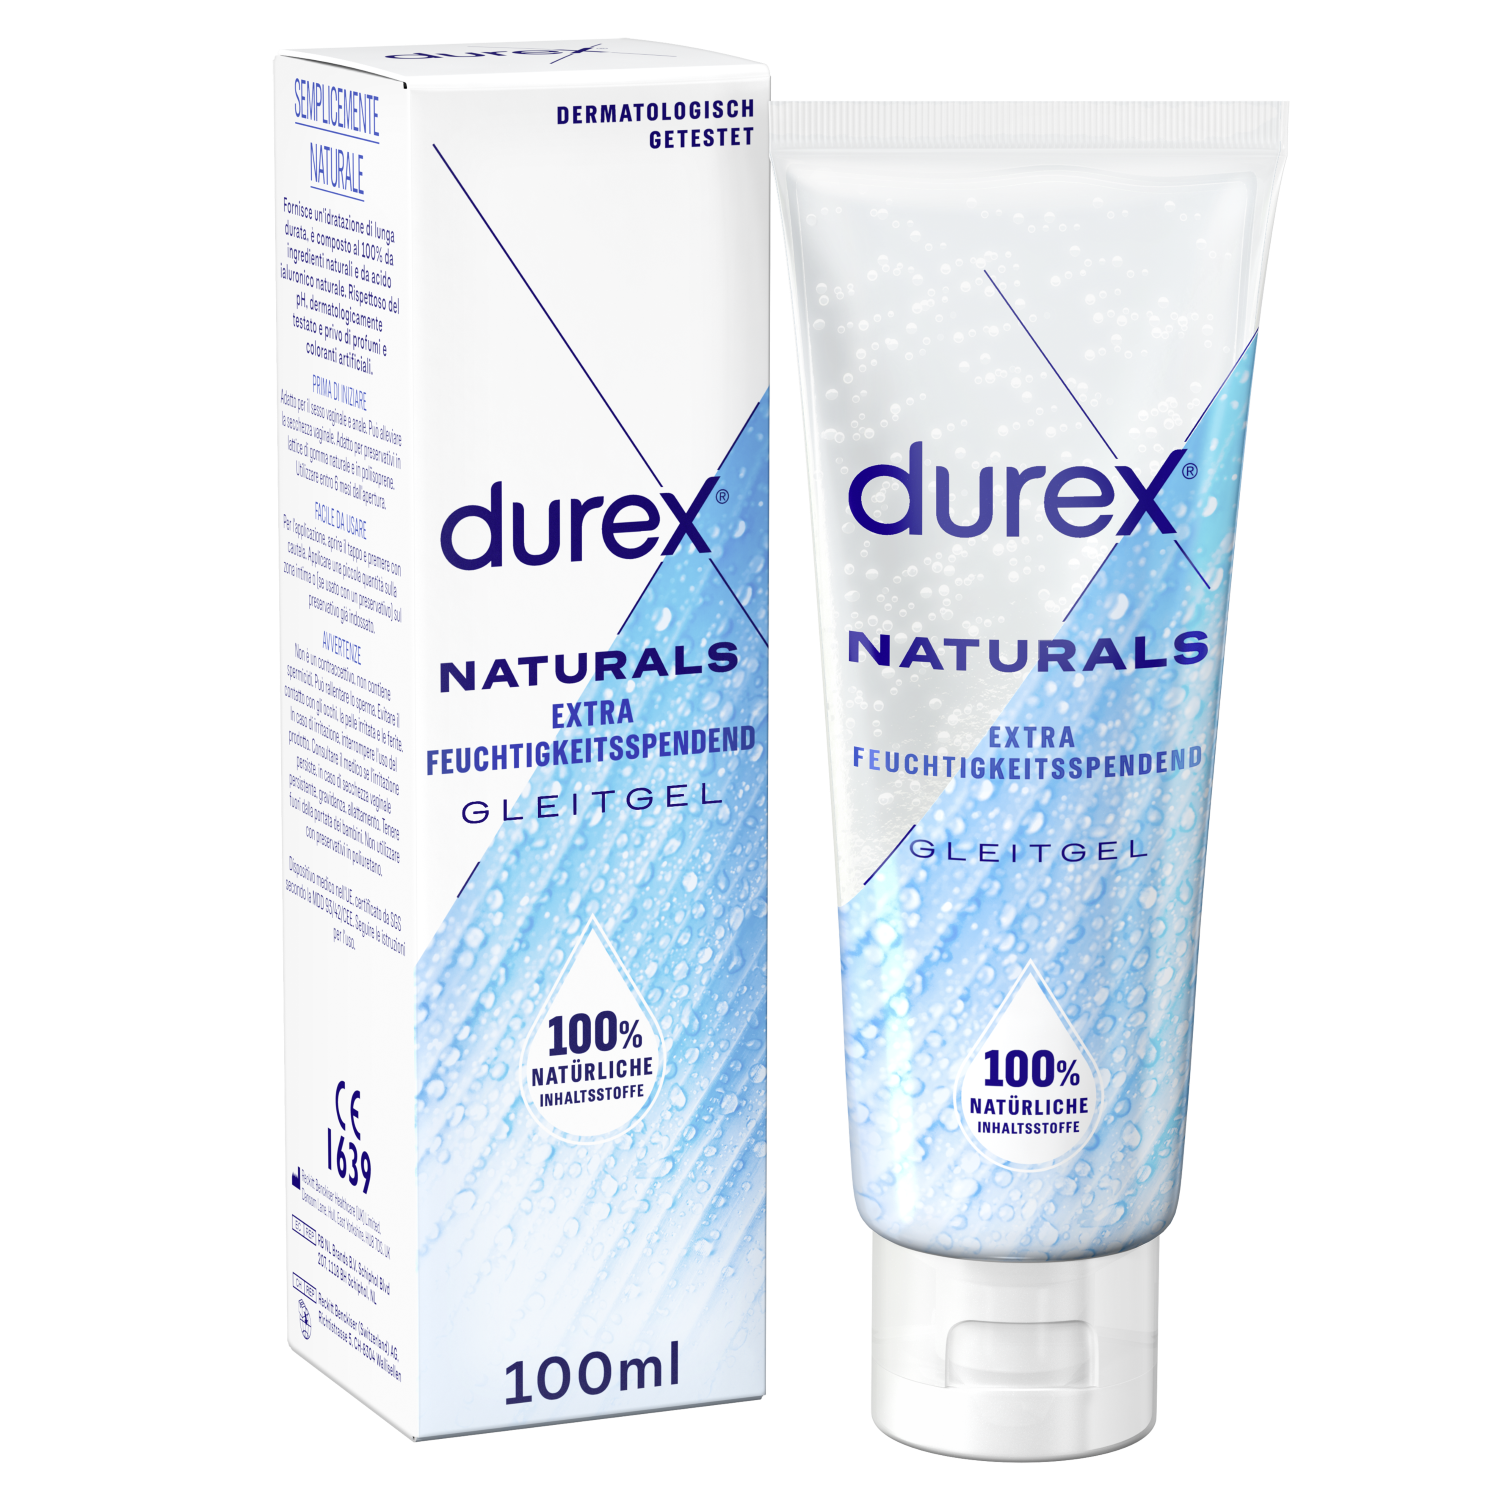 Durex Naturals Gleitgel Extra Feuchtigkeitsspendend, 100ml